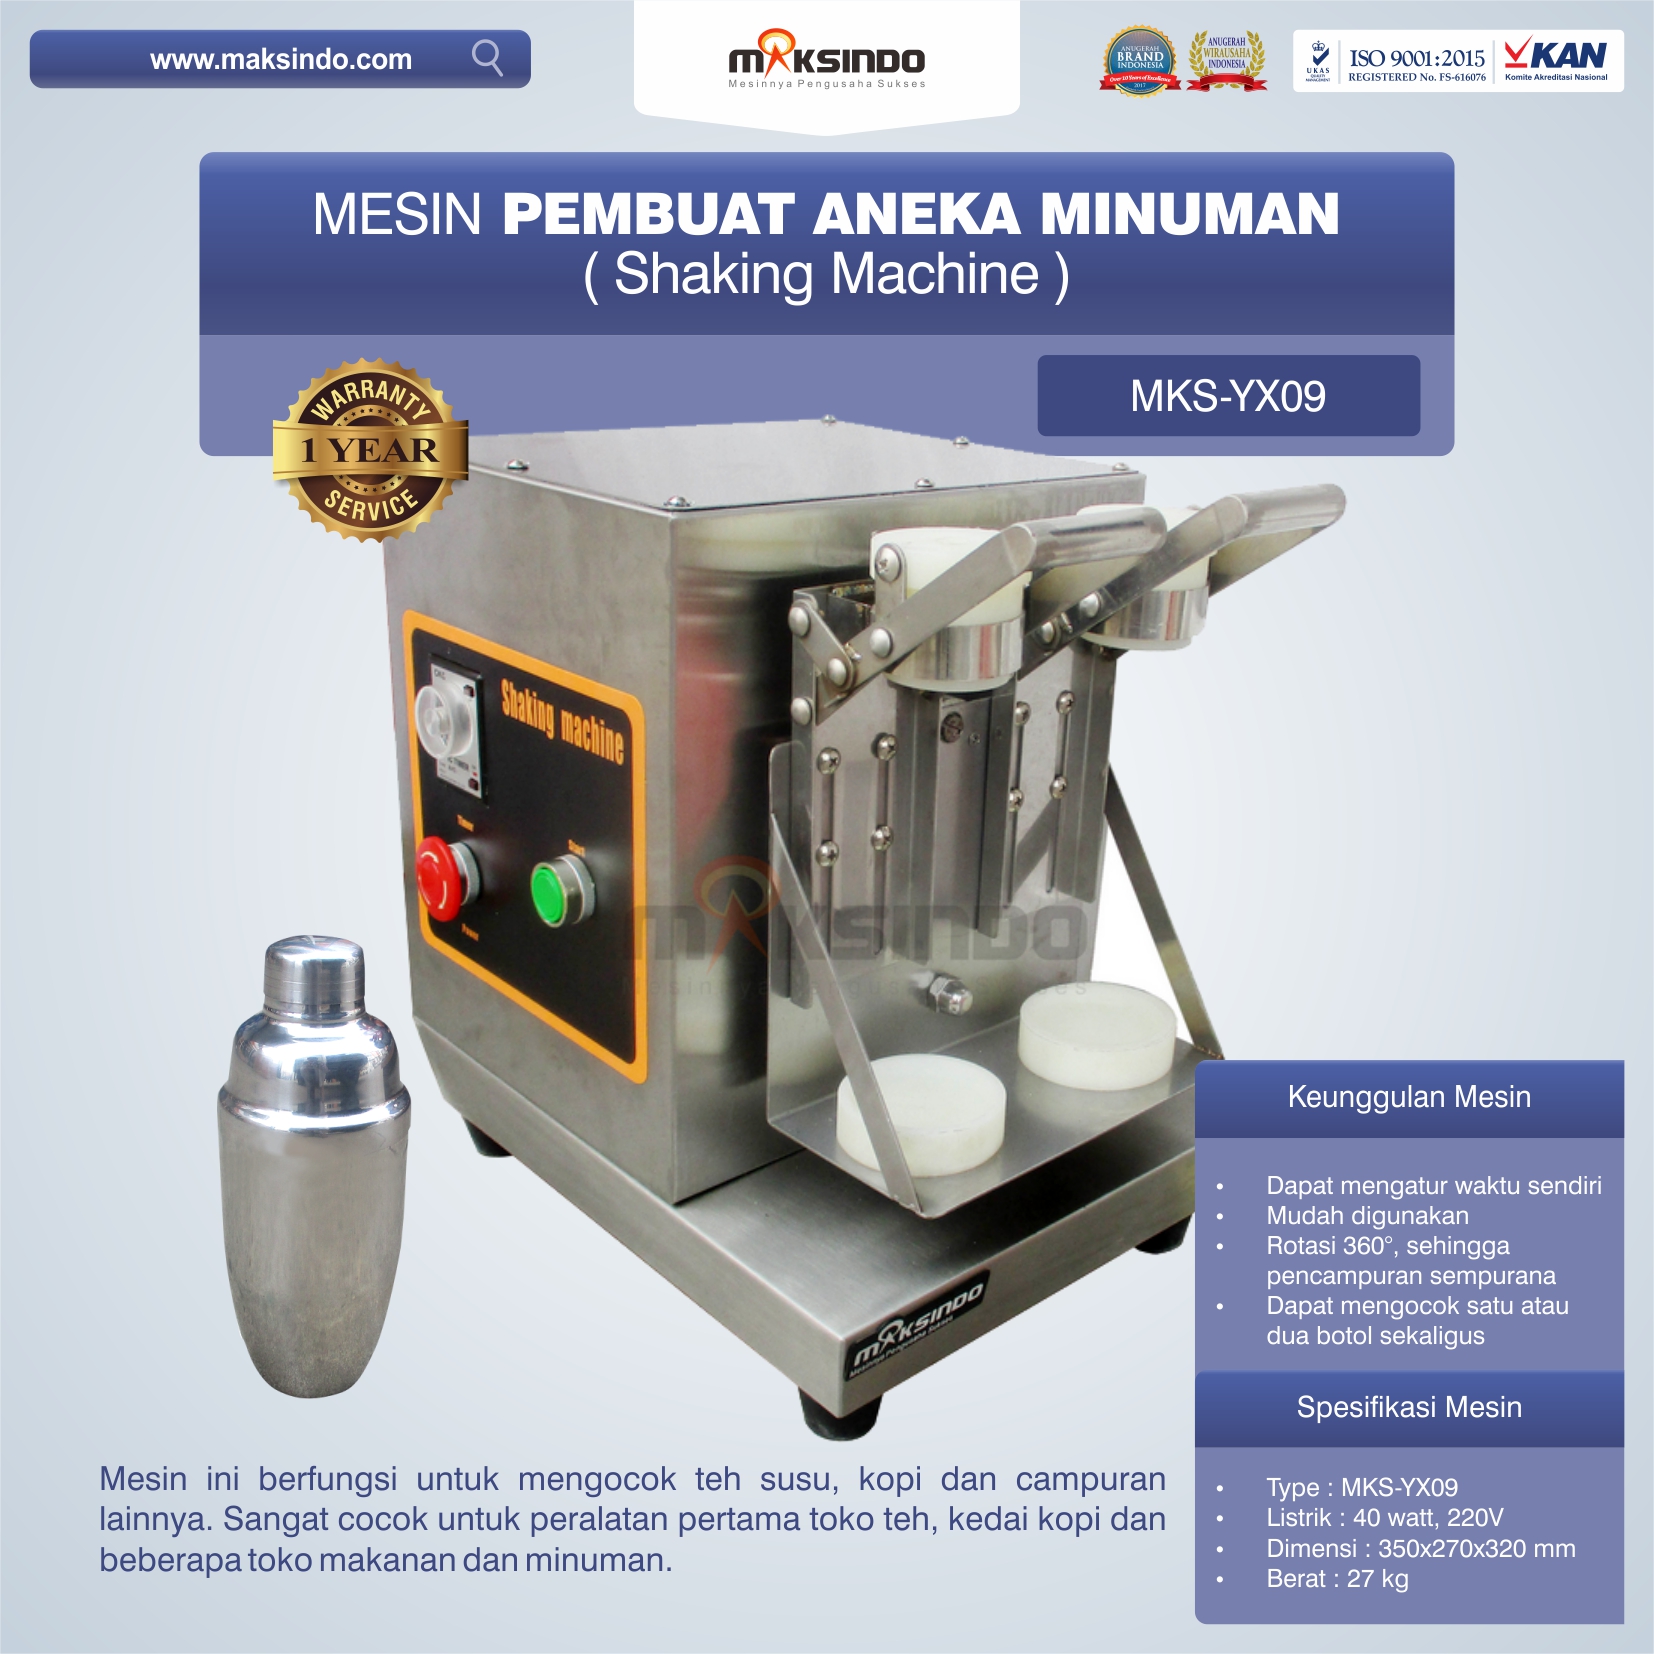 Jual Mesin Pembuat Aneka Minuman (Shaking Machine) MKS-YX09 di Semarang